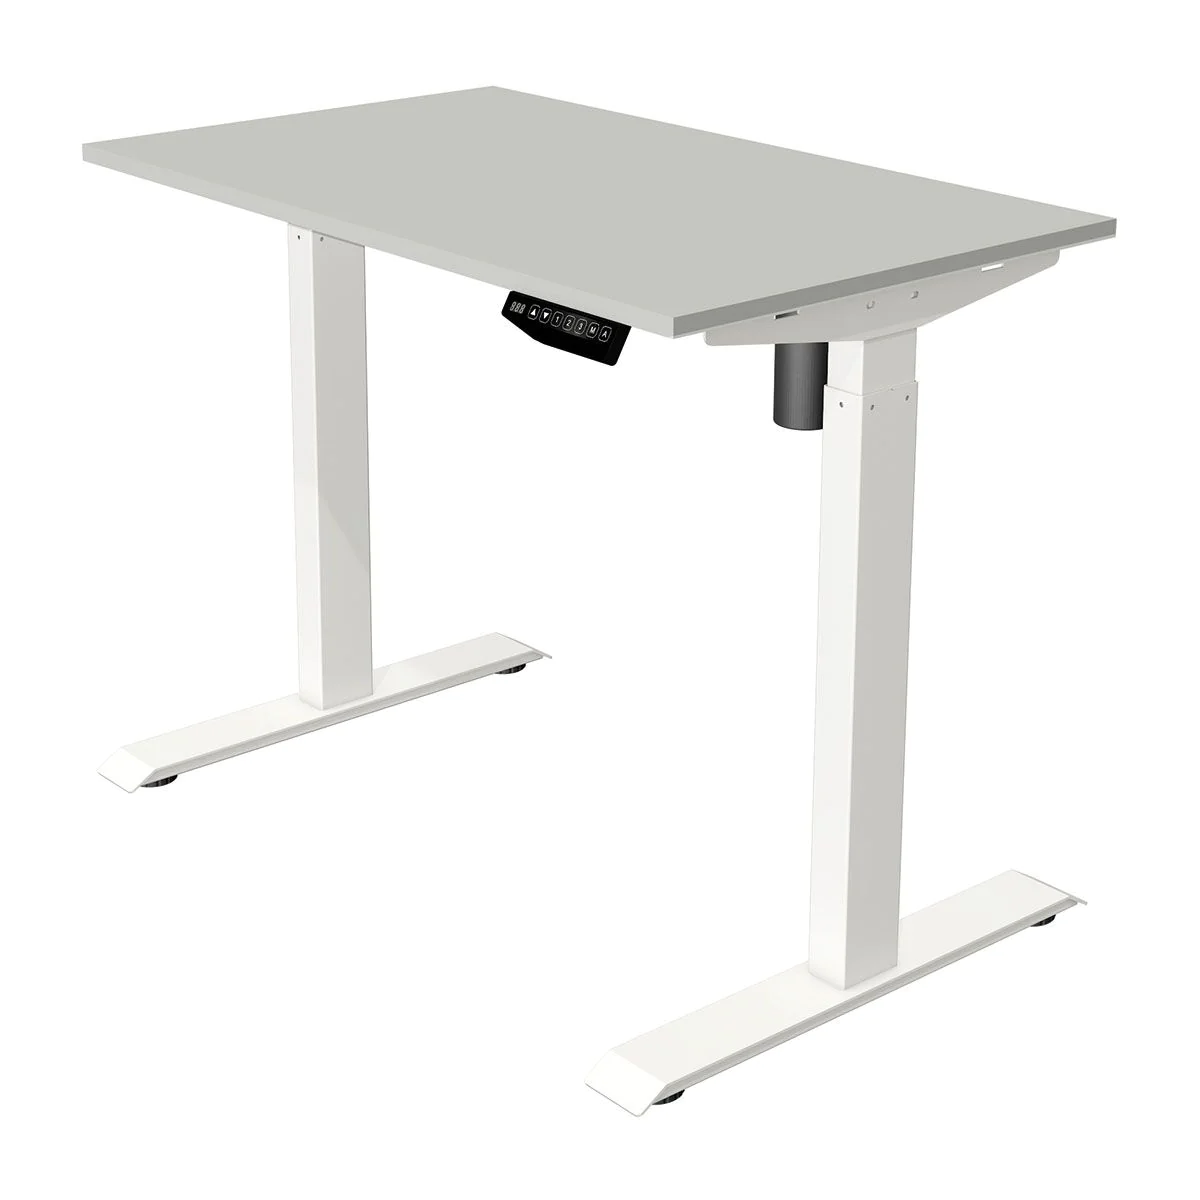 Höhenverstellbarer Schreibtisch Move 1 100 x 60 cm - Lichtgrau/Weiß - KMA-10388611